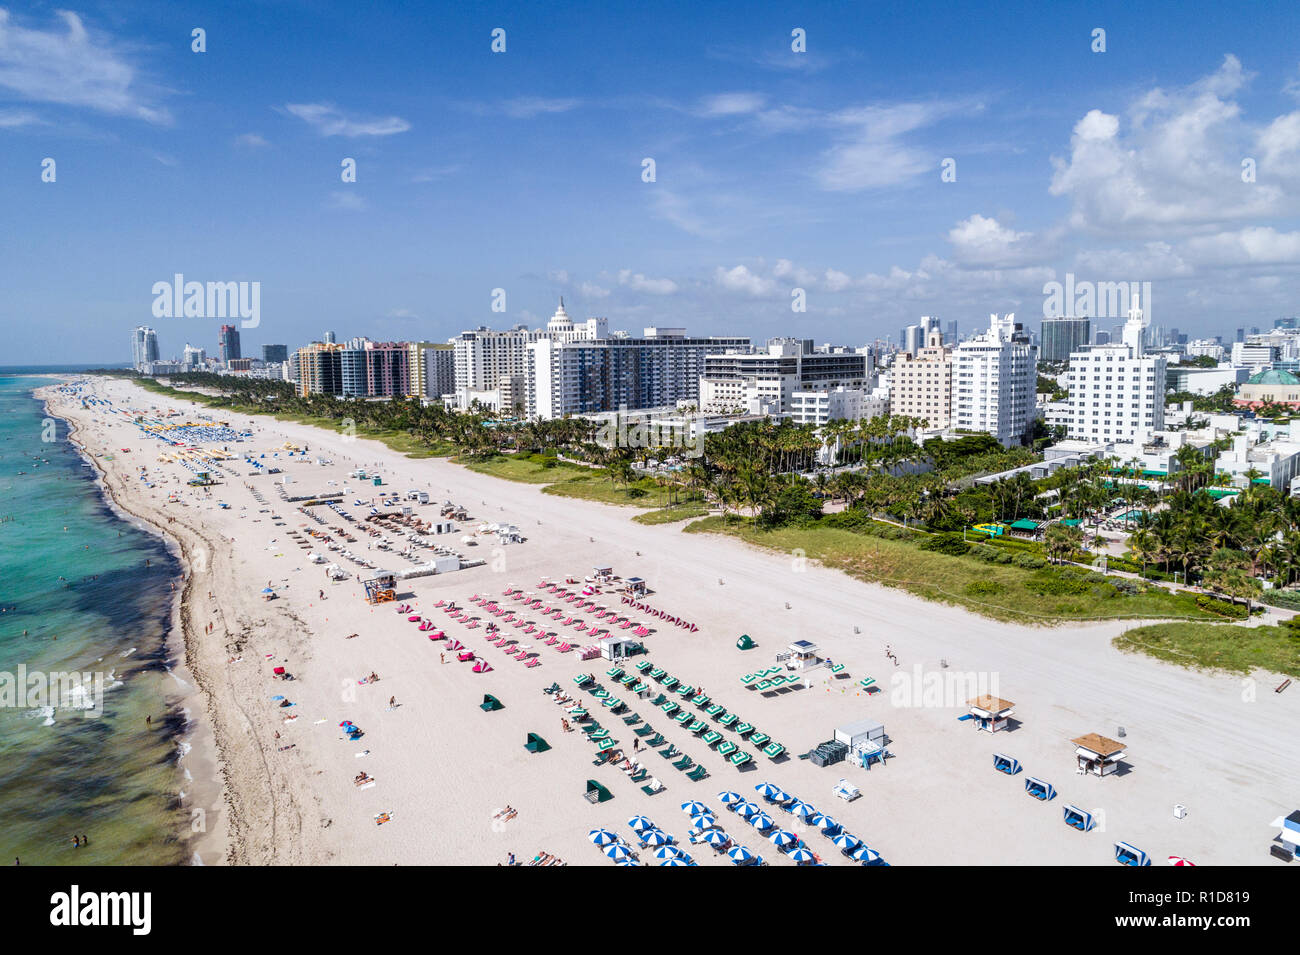 Miami Beach Florida, Luftaufnahme von oben, Hotel, öffentlicher Strand am Atlantik, Nautilus South Beach SIXTY Hotel, FL180721d09 Stockfoto